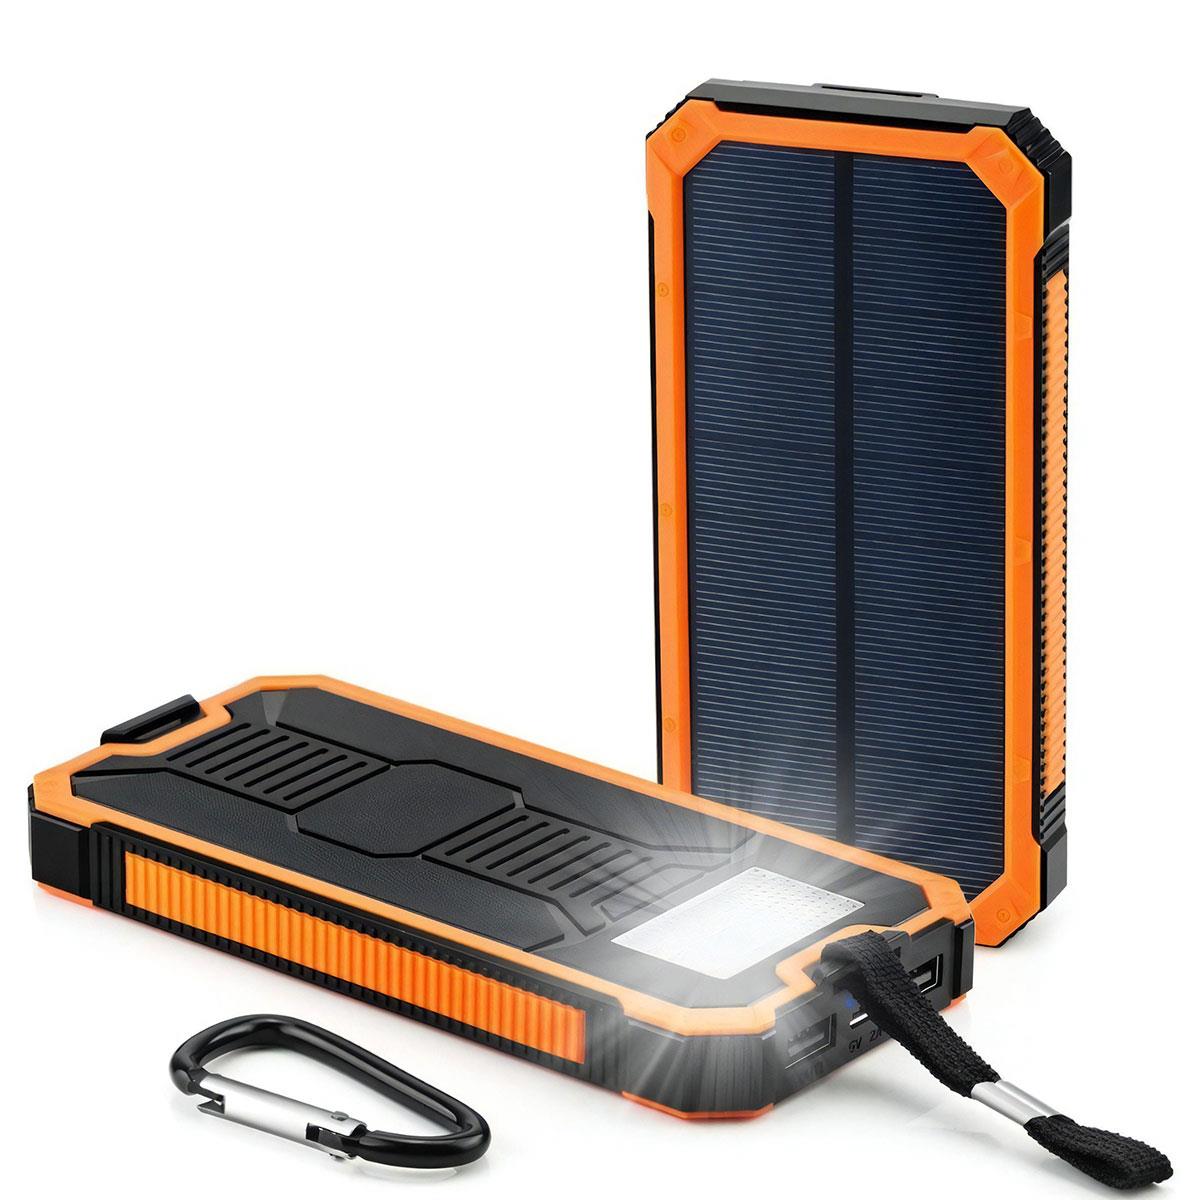 Deji Güneş Enerjili Solar Powerbank 10000mAh Led Işıklı Taşınabilir Şarj Cihazı Turuncu